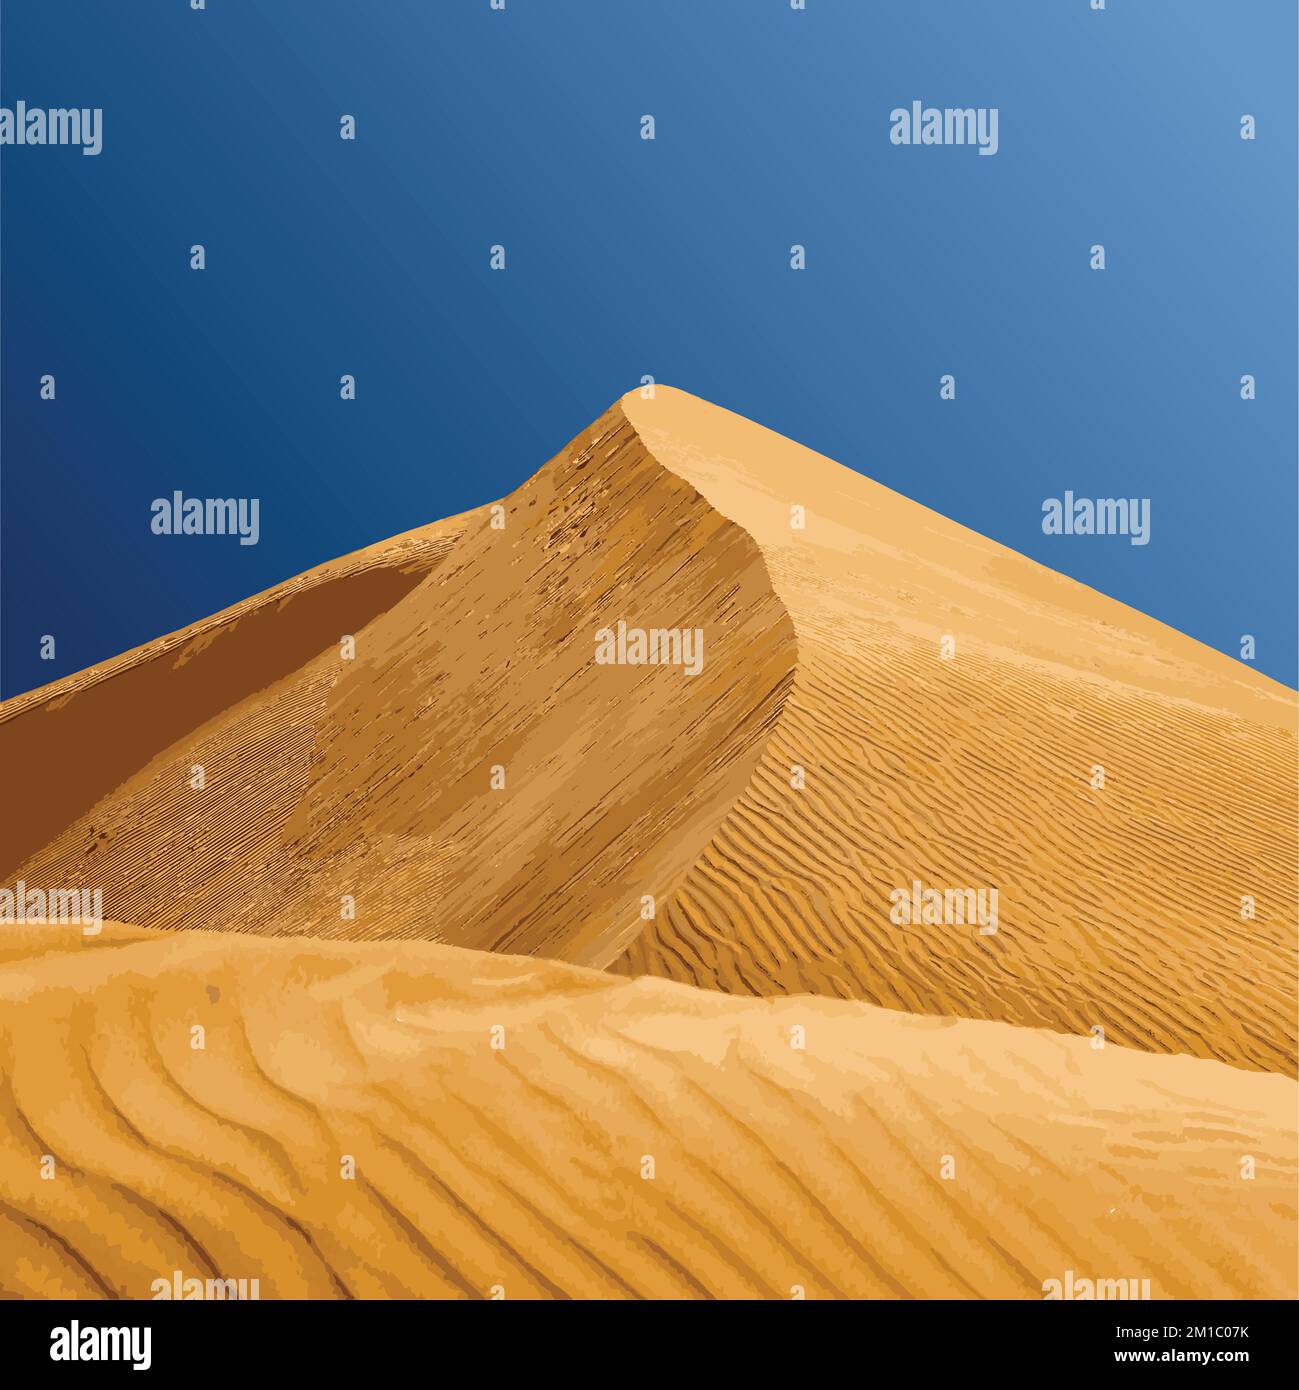 Dune de sable avec illustration vectorielle de fond bleu ciel Illustration de Vecteur